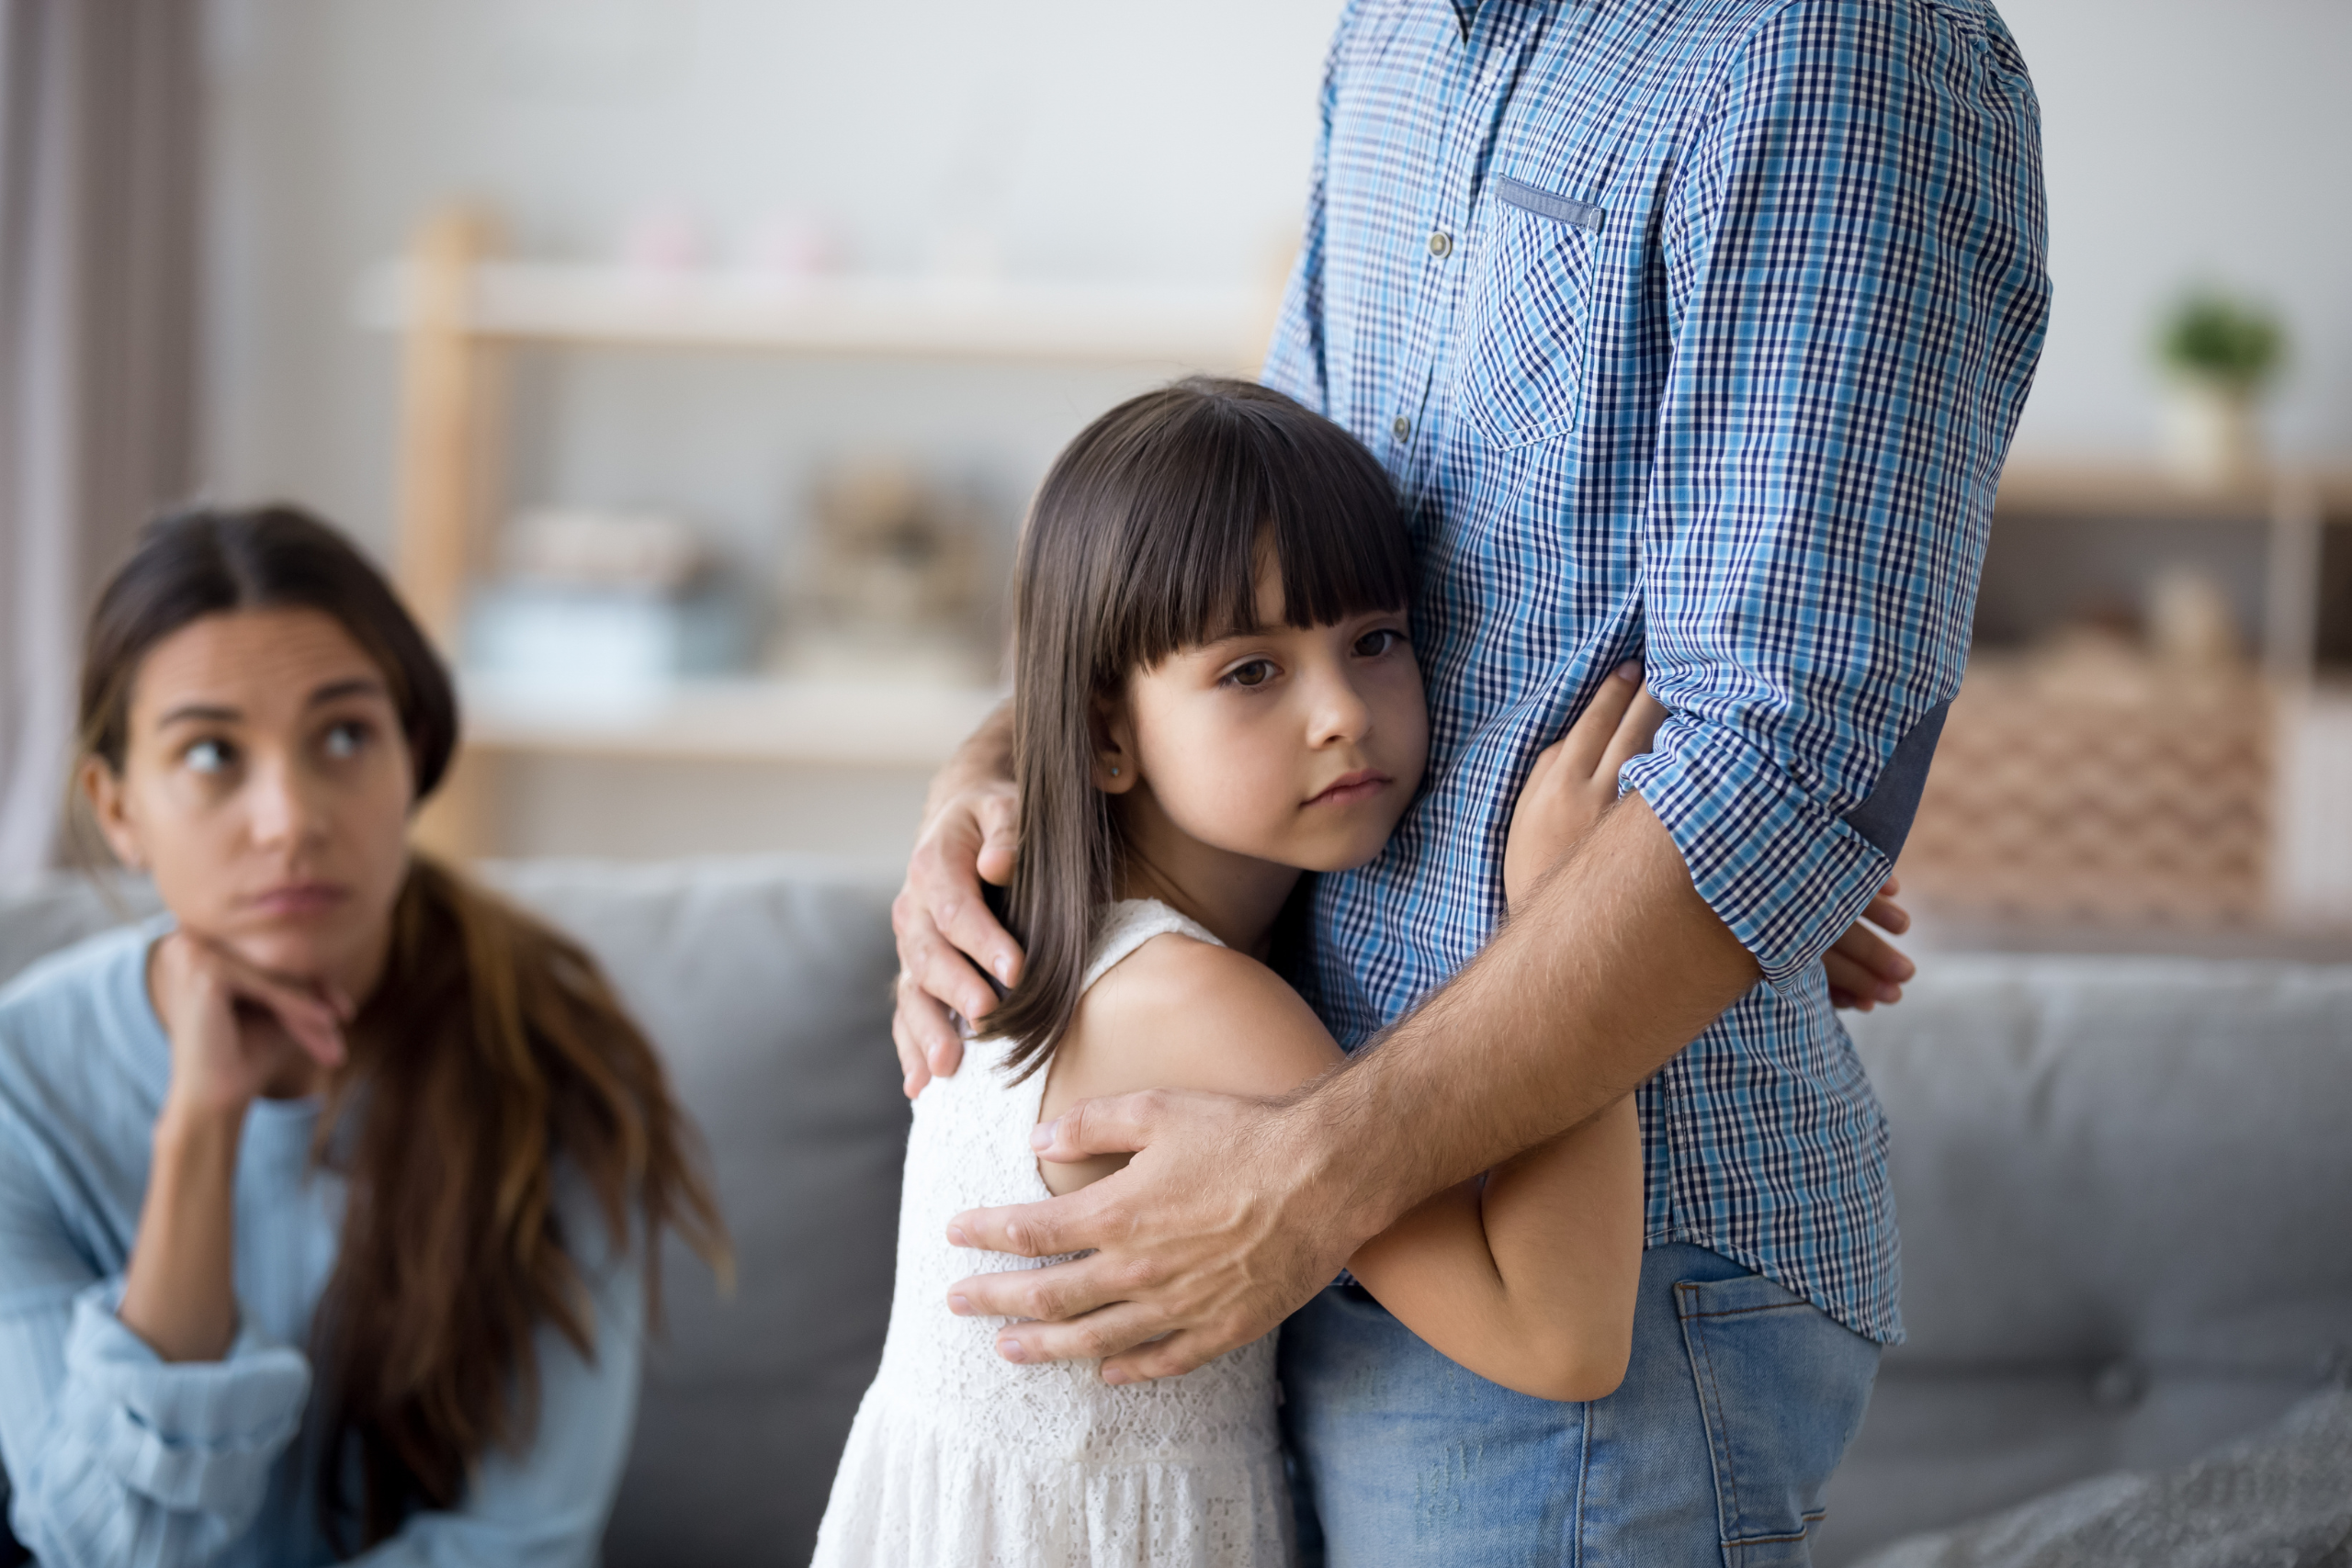 Complex Divorces Can Impact Your Children